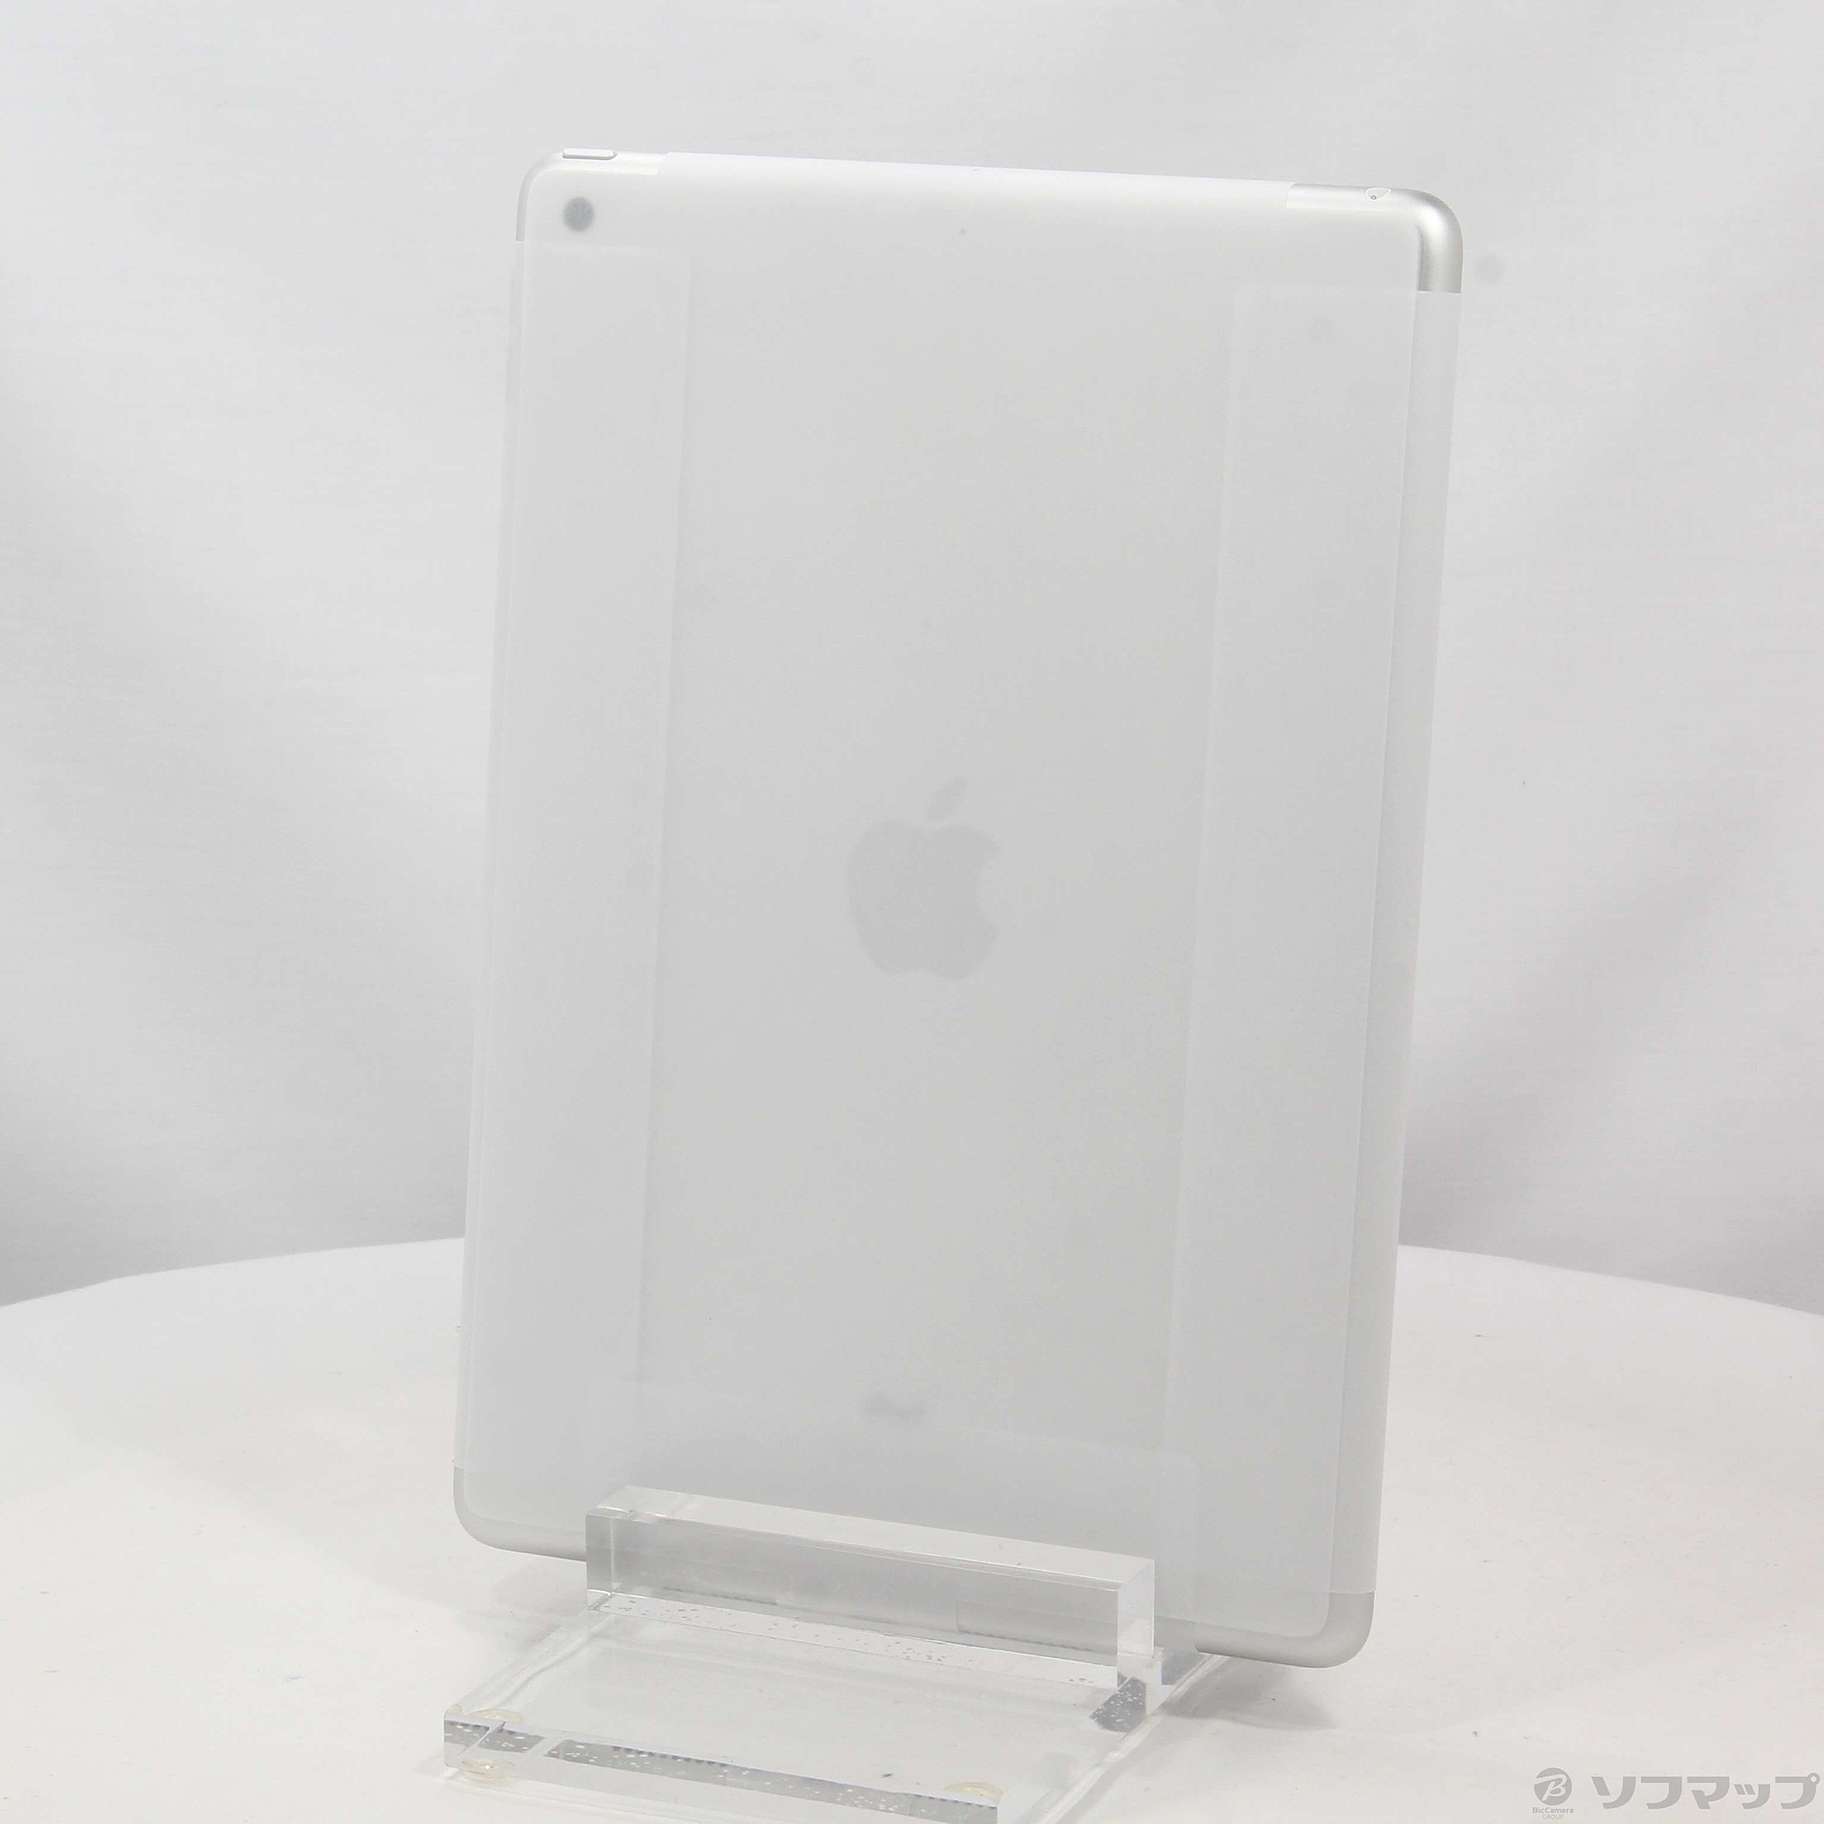 APPLEアップル iPad 第9世代 WiFi 64GB シルバー